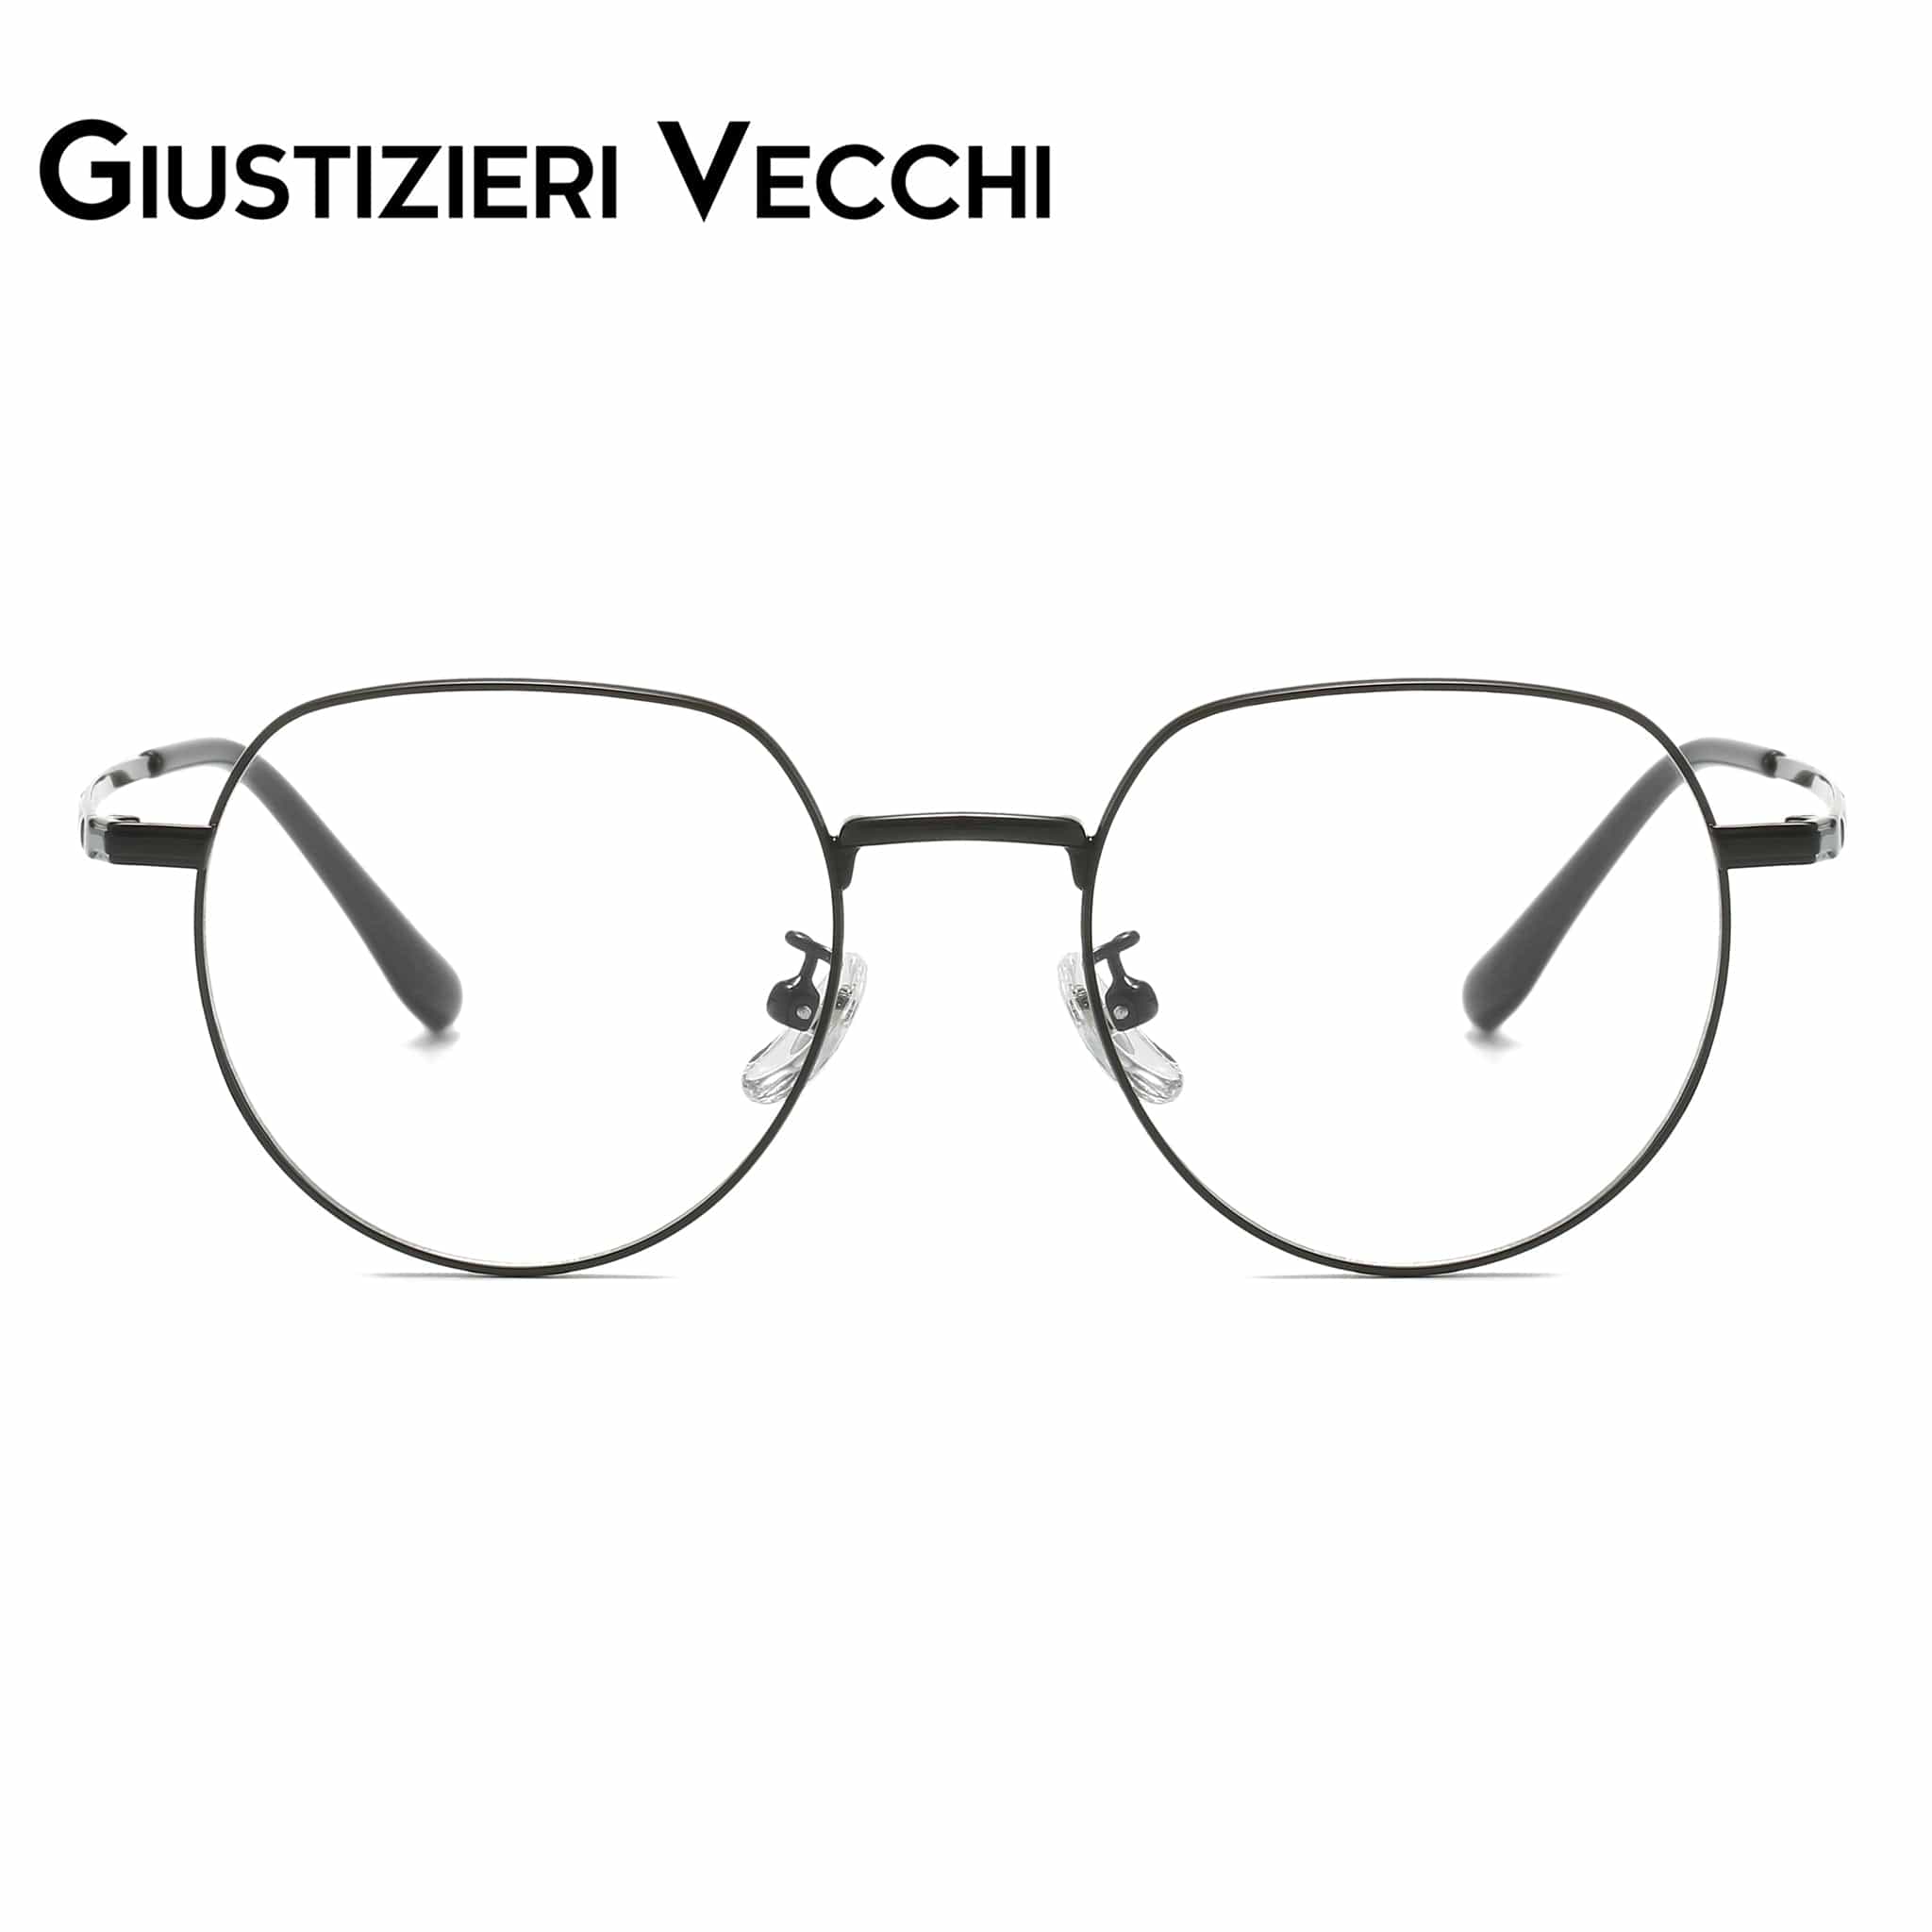 GIUSTIZIERI VECCHI Eyeglasses Black / Small LunarTide Uno